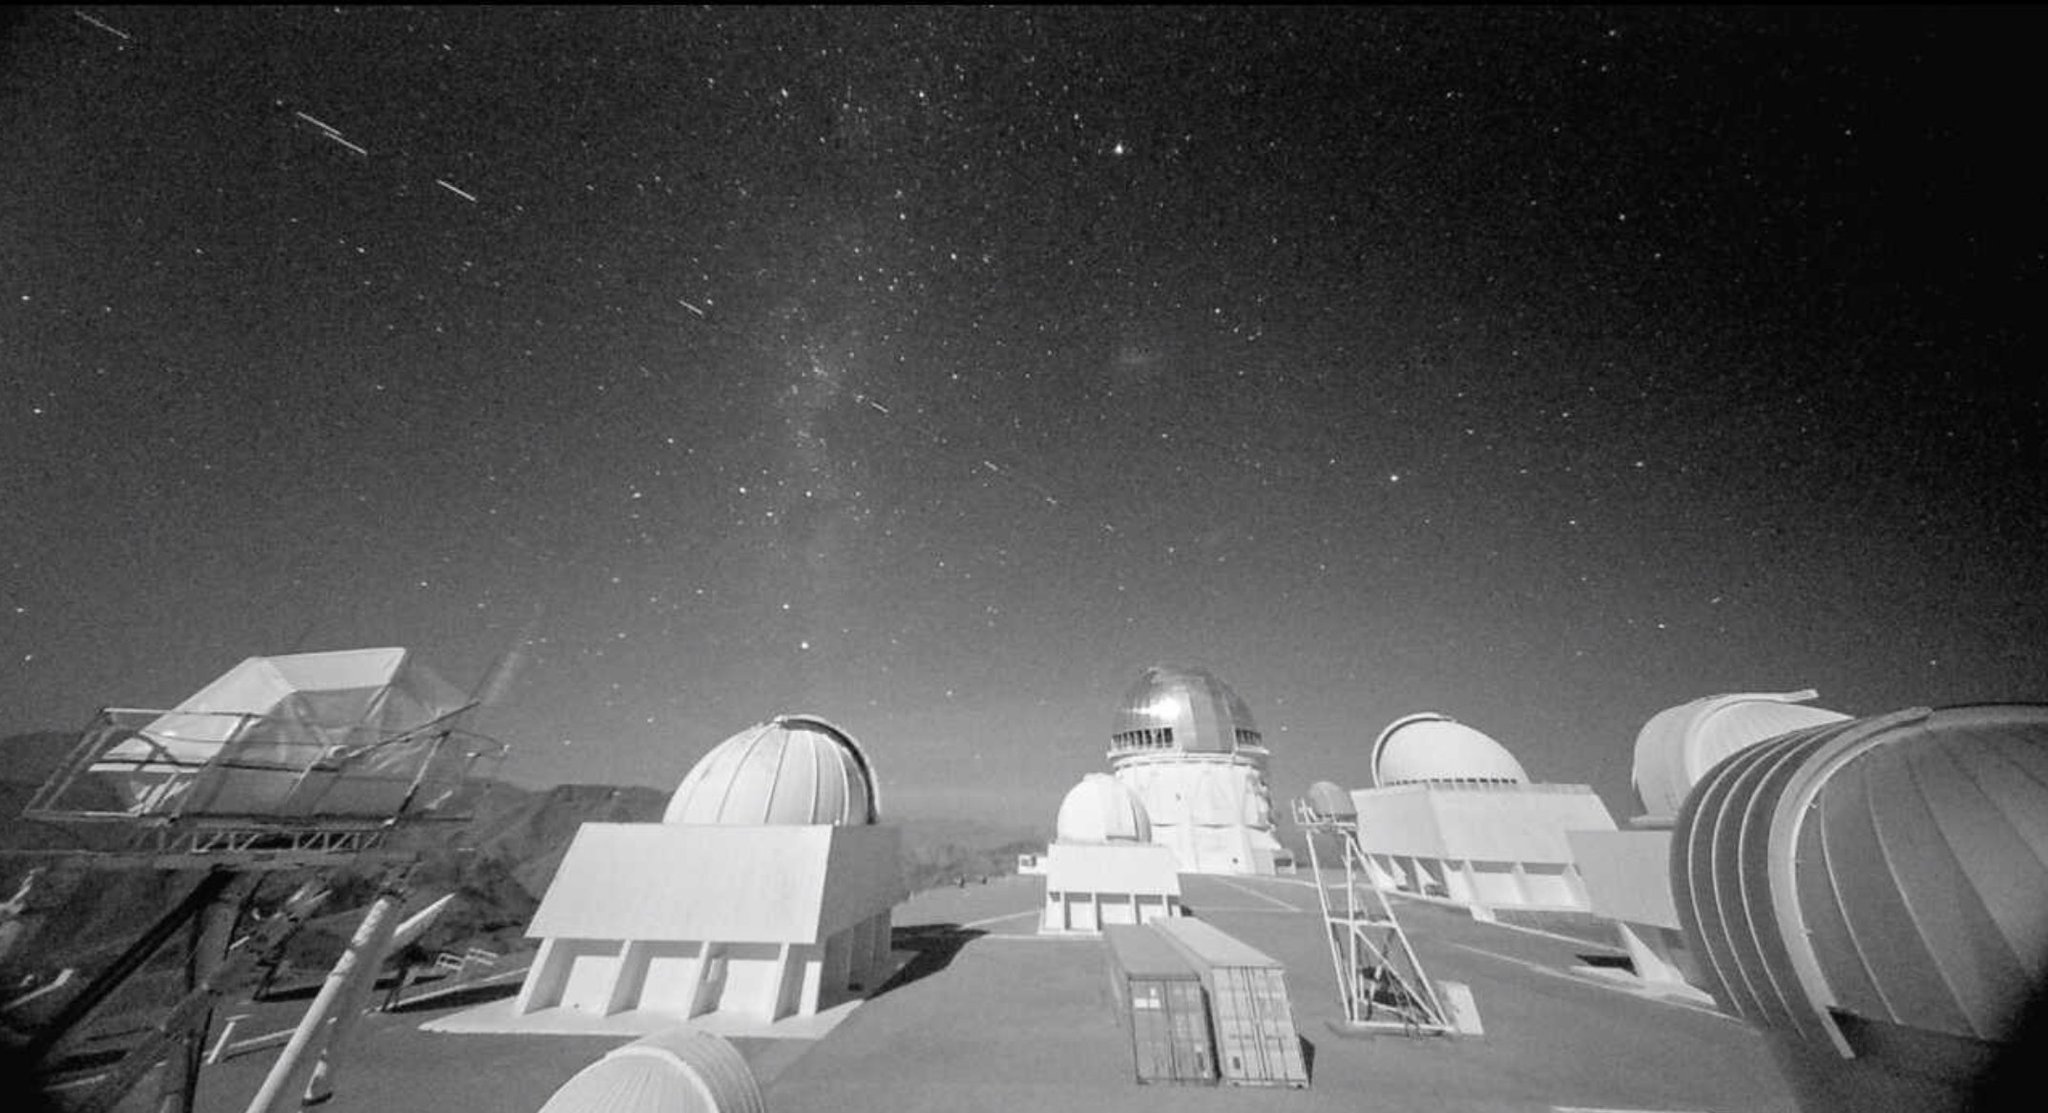   Các vệt trên bầu trời gần đây đã được phát hiện bởi một đài quan sát - 'chặn' tầm nhìn của các ngôi sao